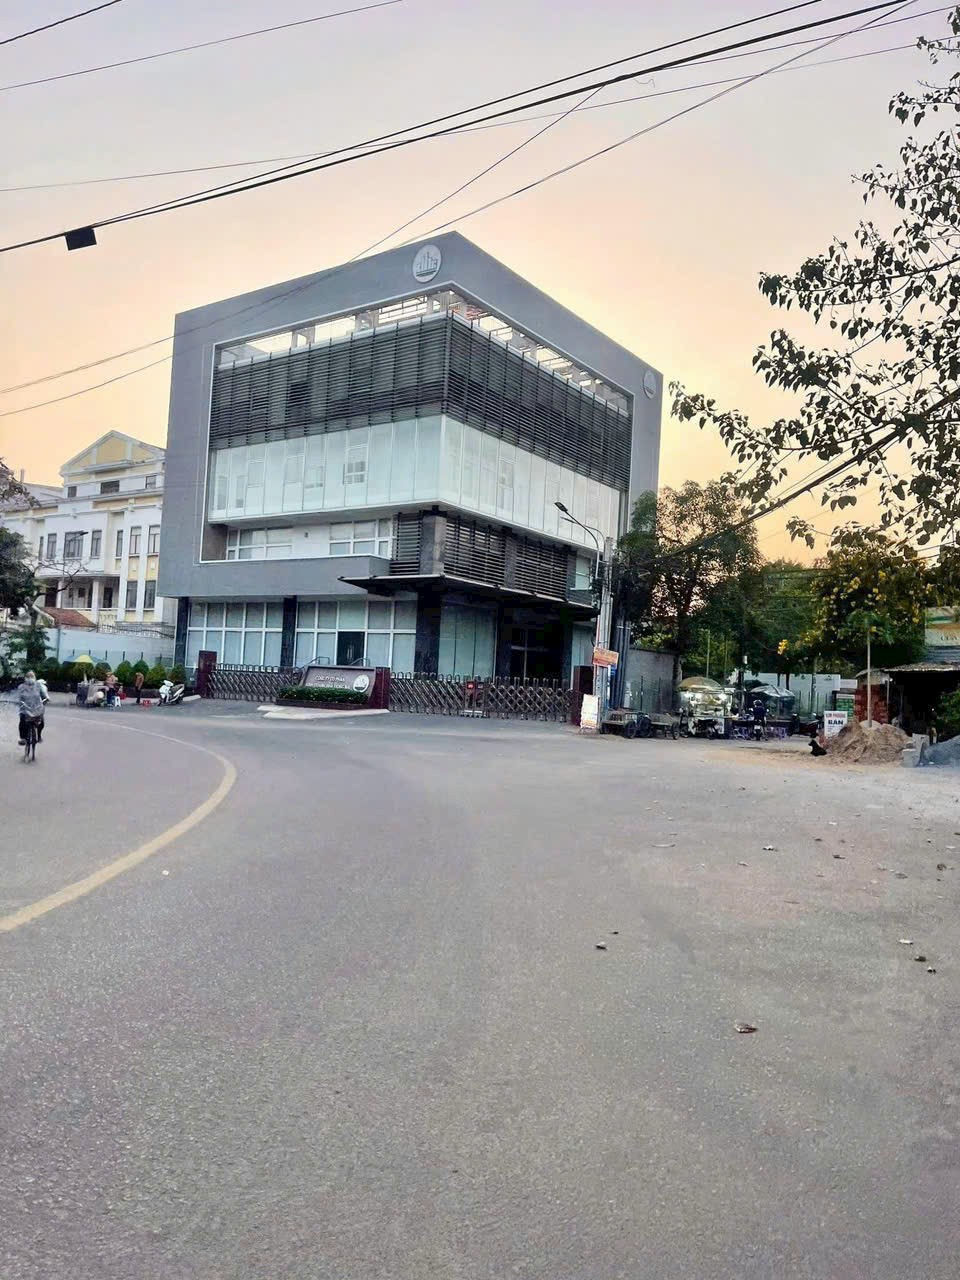 Bán nhà 1L 71,9m2 gần ngã 3 thành p.Quang Vinh,Biên Hoà,Đ.Nai 1.99 tỷ tl - Ảnh 8